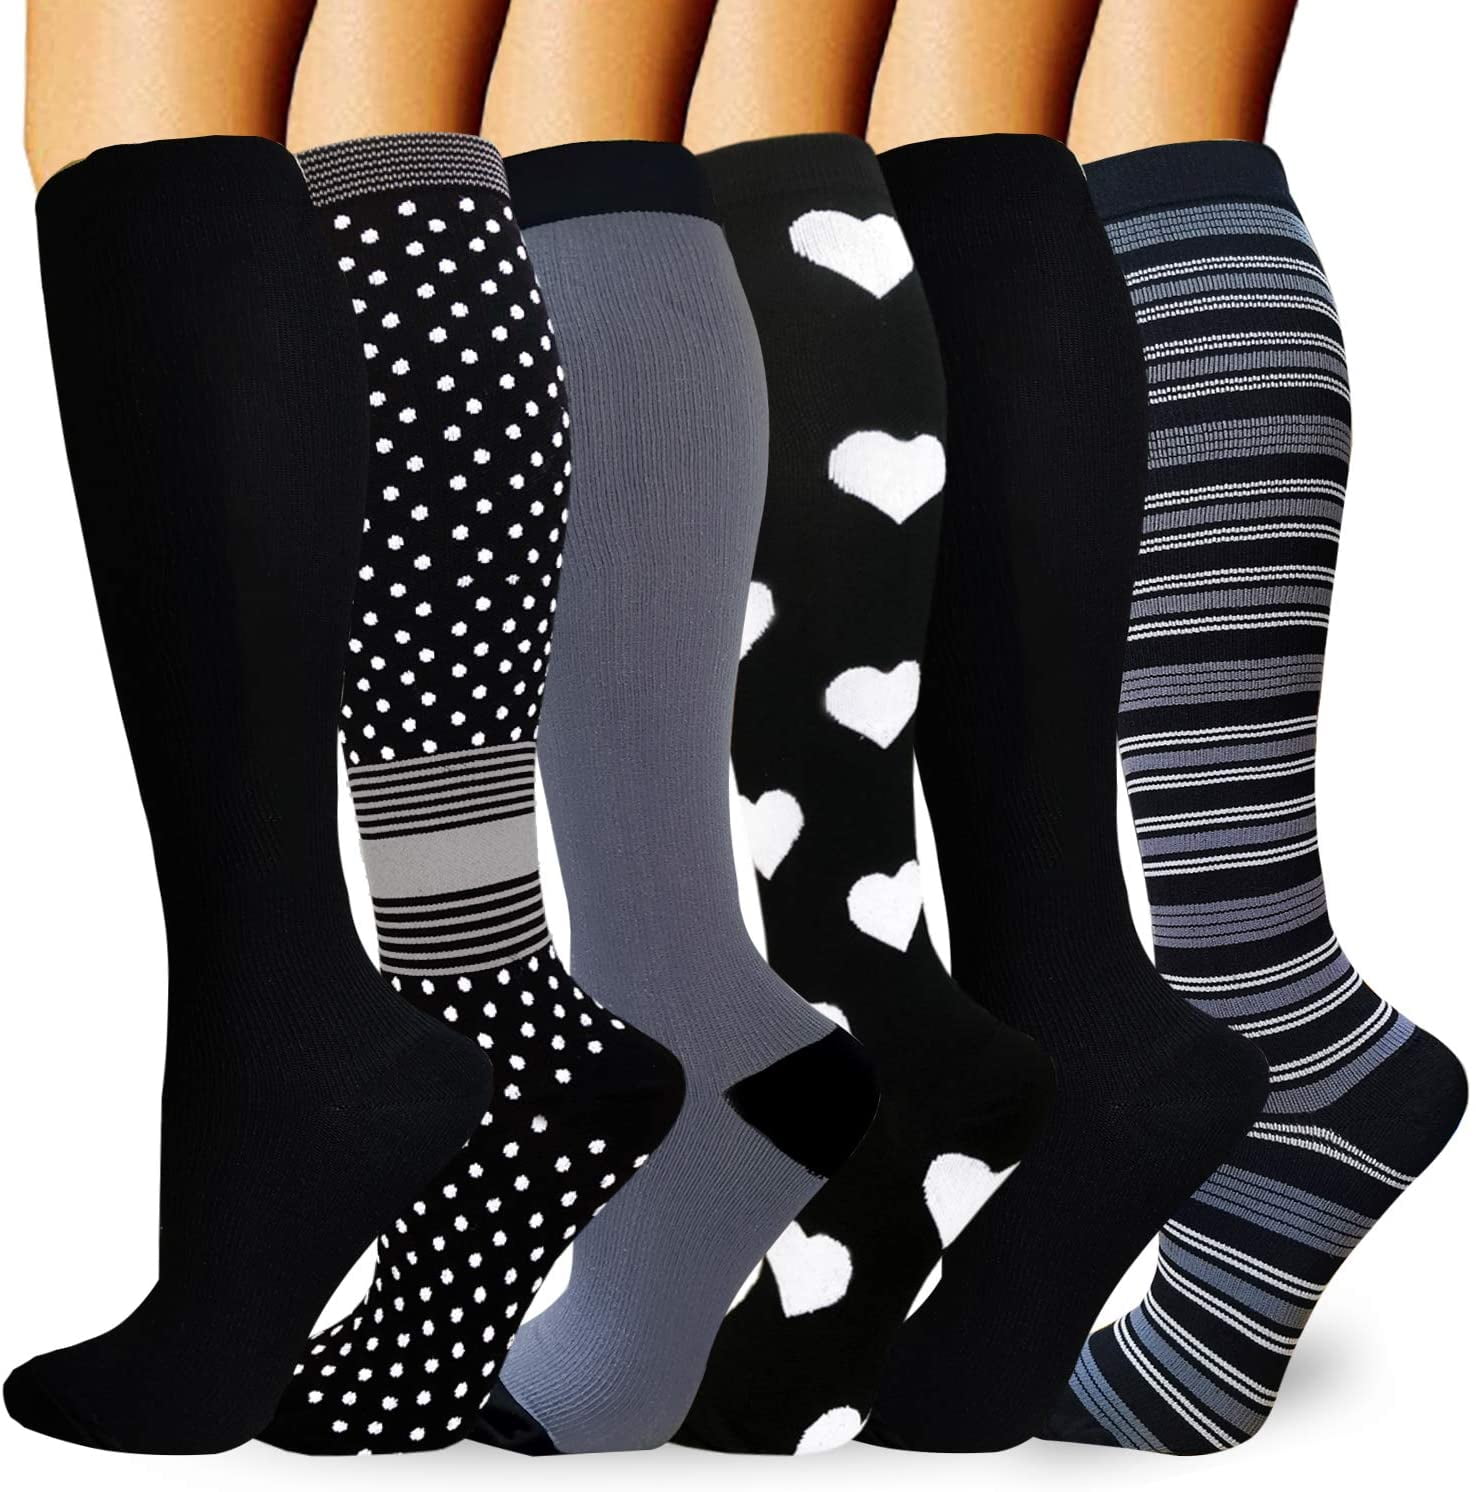 support socks for nurses